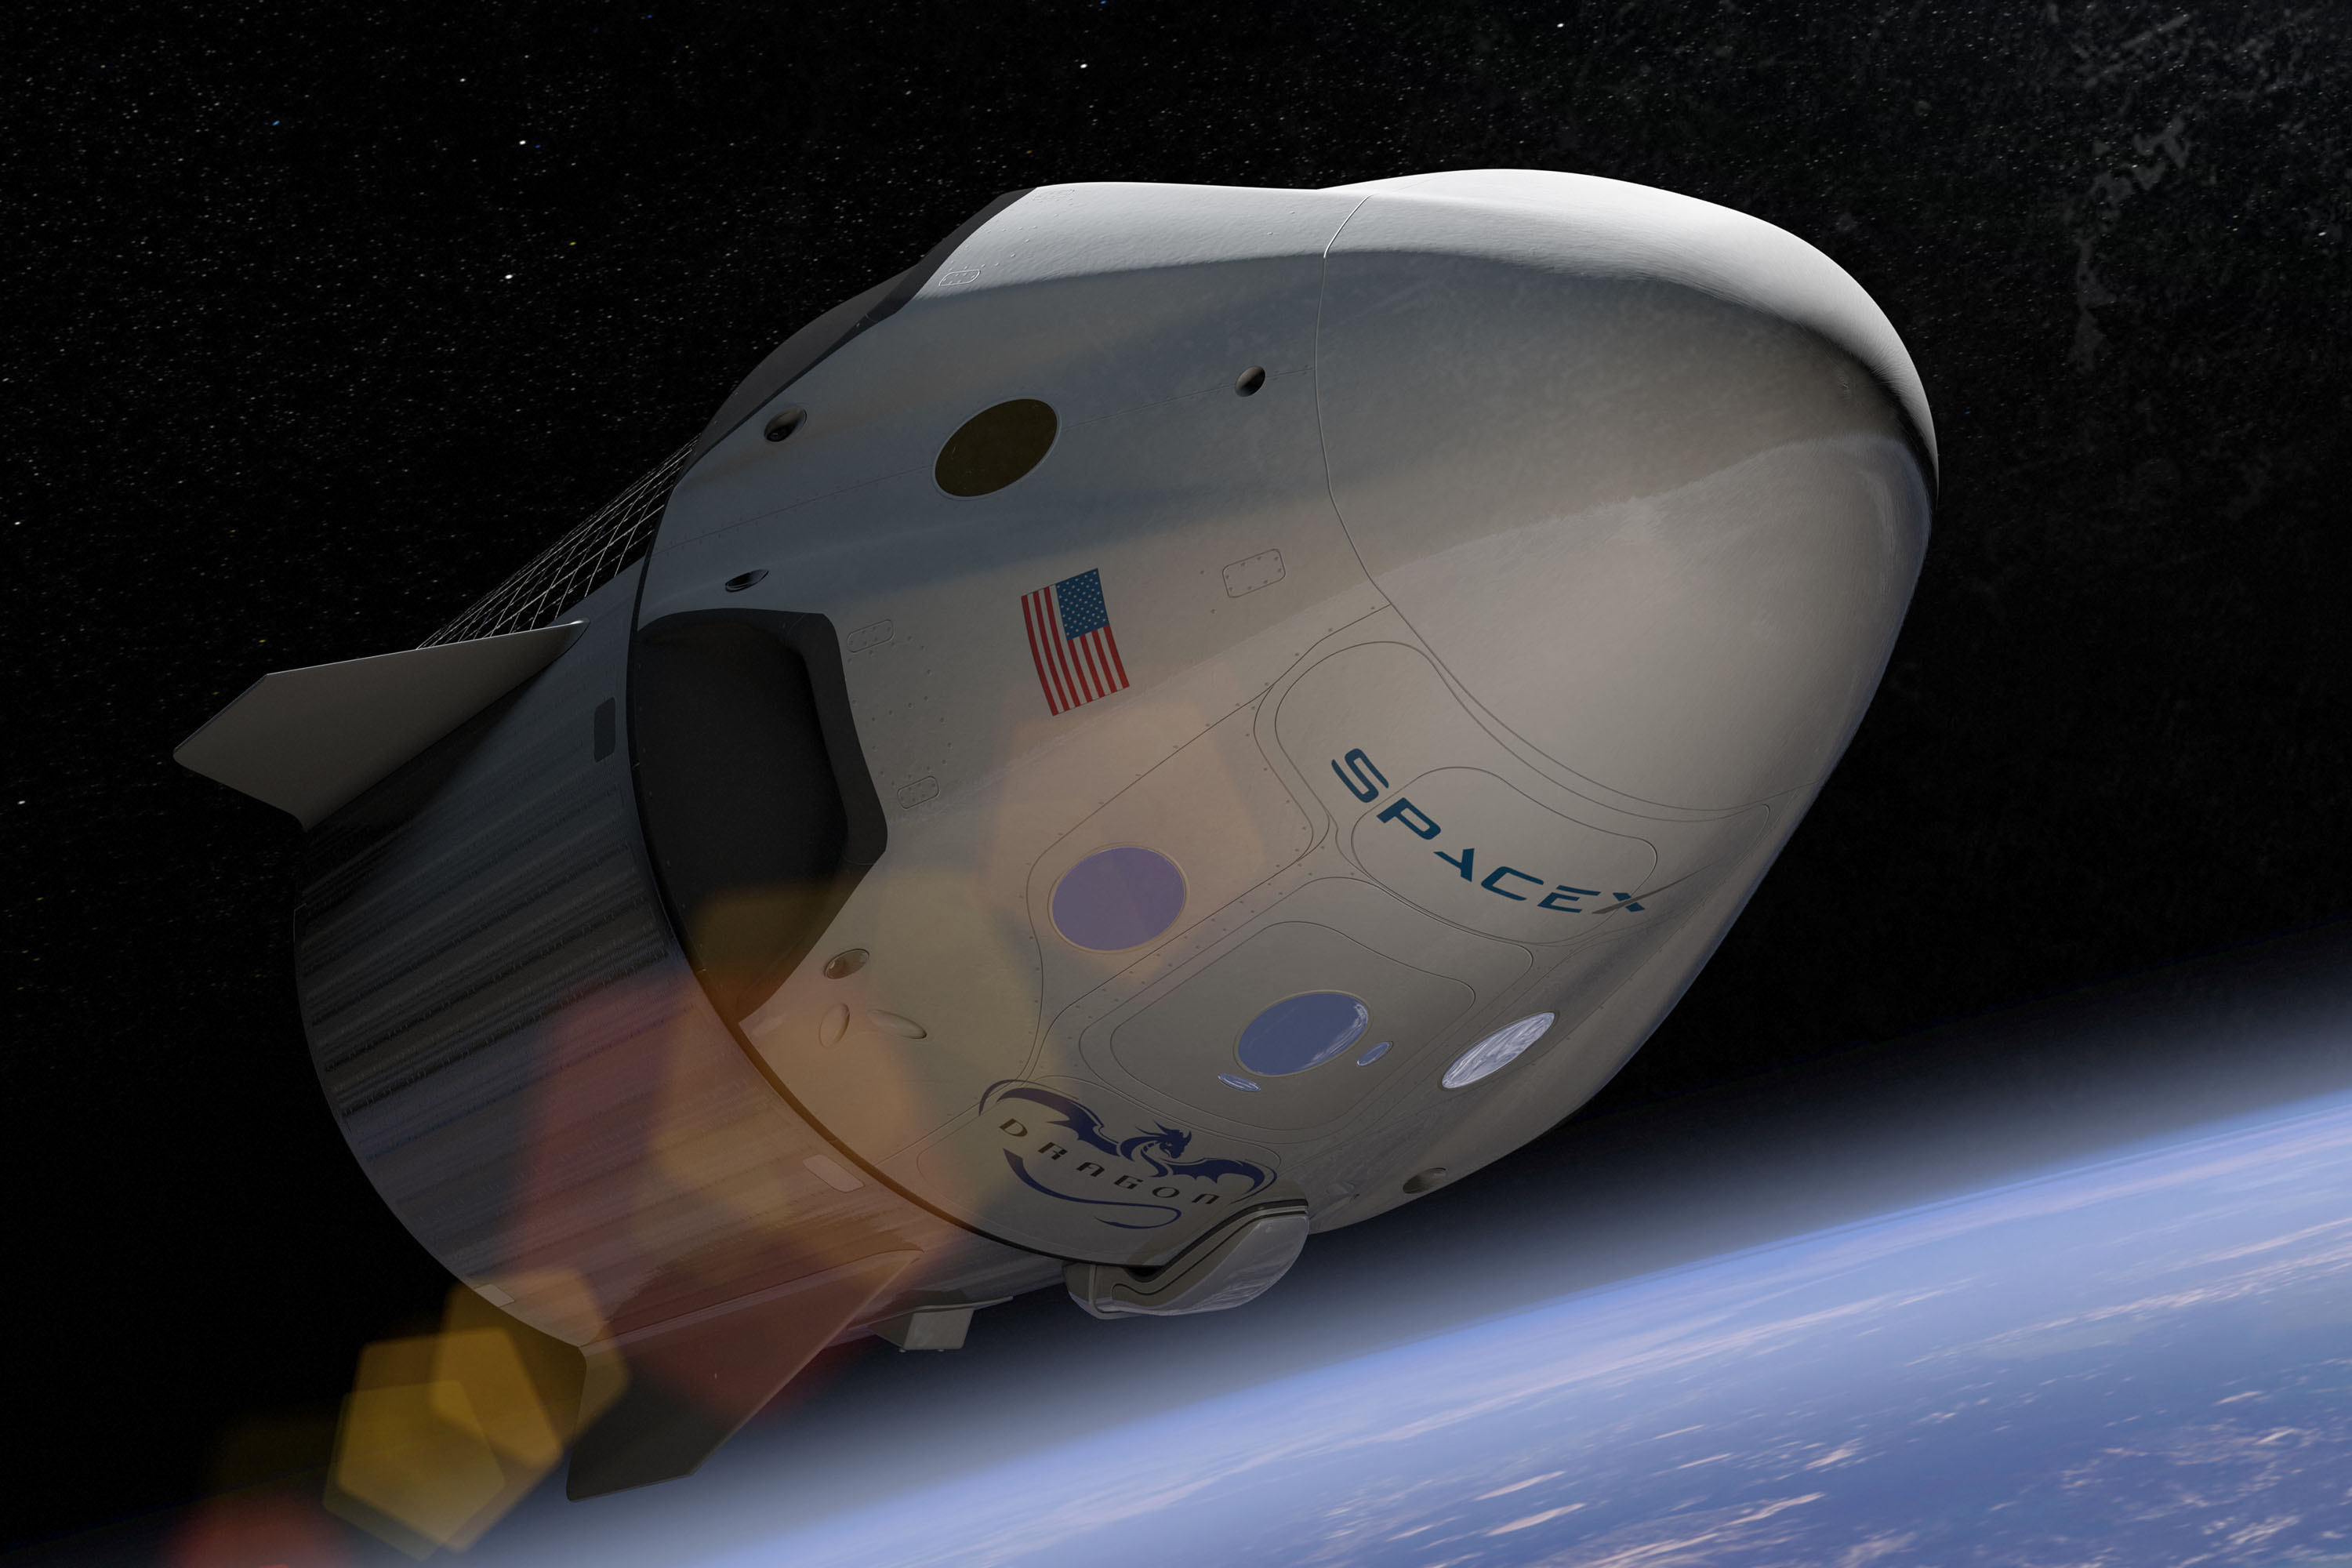 Улетели в историю: как SpaceX Илона Маска смогла обогнать «Роскосмос» так сильно и так быстро? Dragon, SpaceX, больше, может, будет, человек, ракеты, объем, корабля, на орбиту, никто, «Союз», станции, полетов, корабль, на МКС, Starship, полета, на станцию, людей